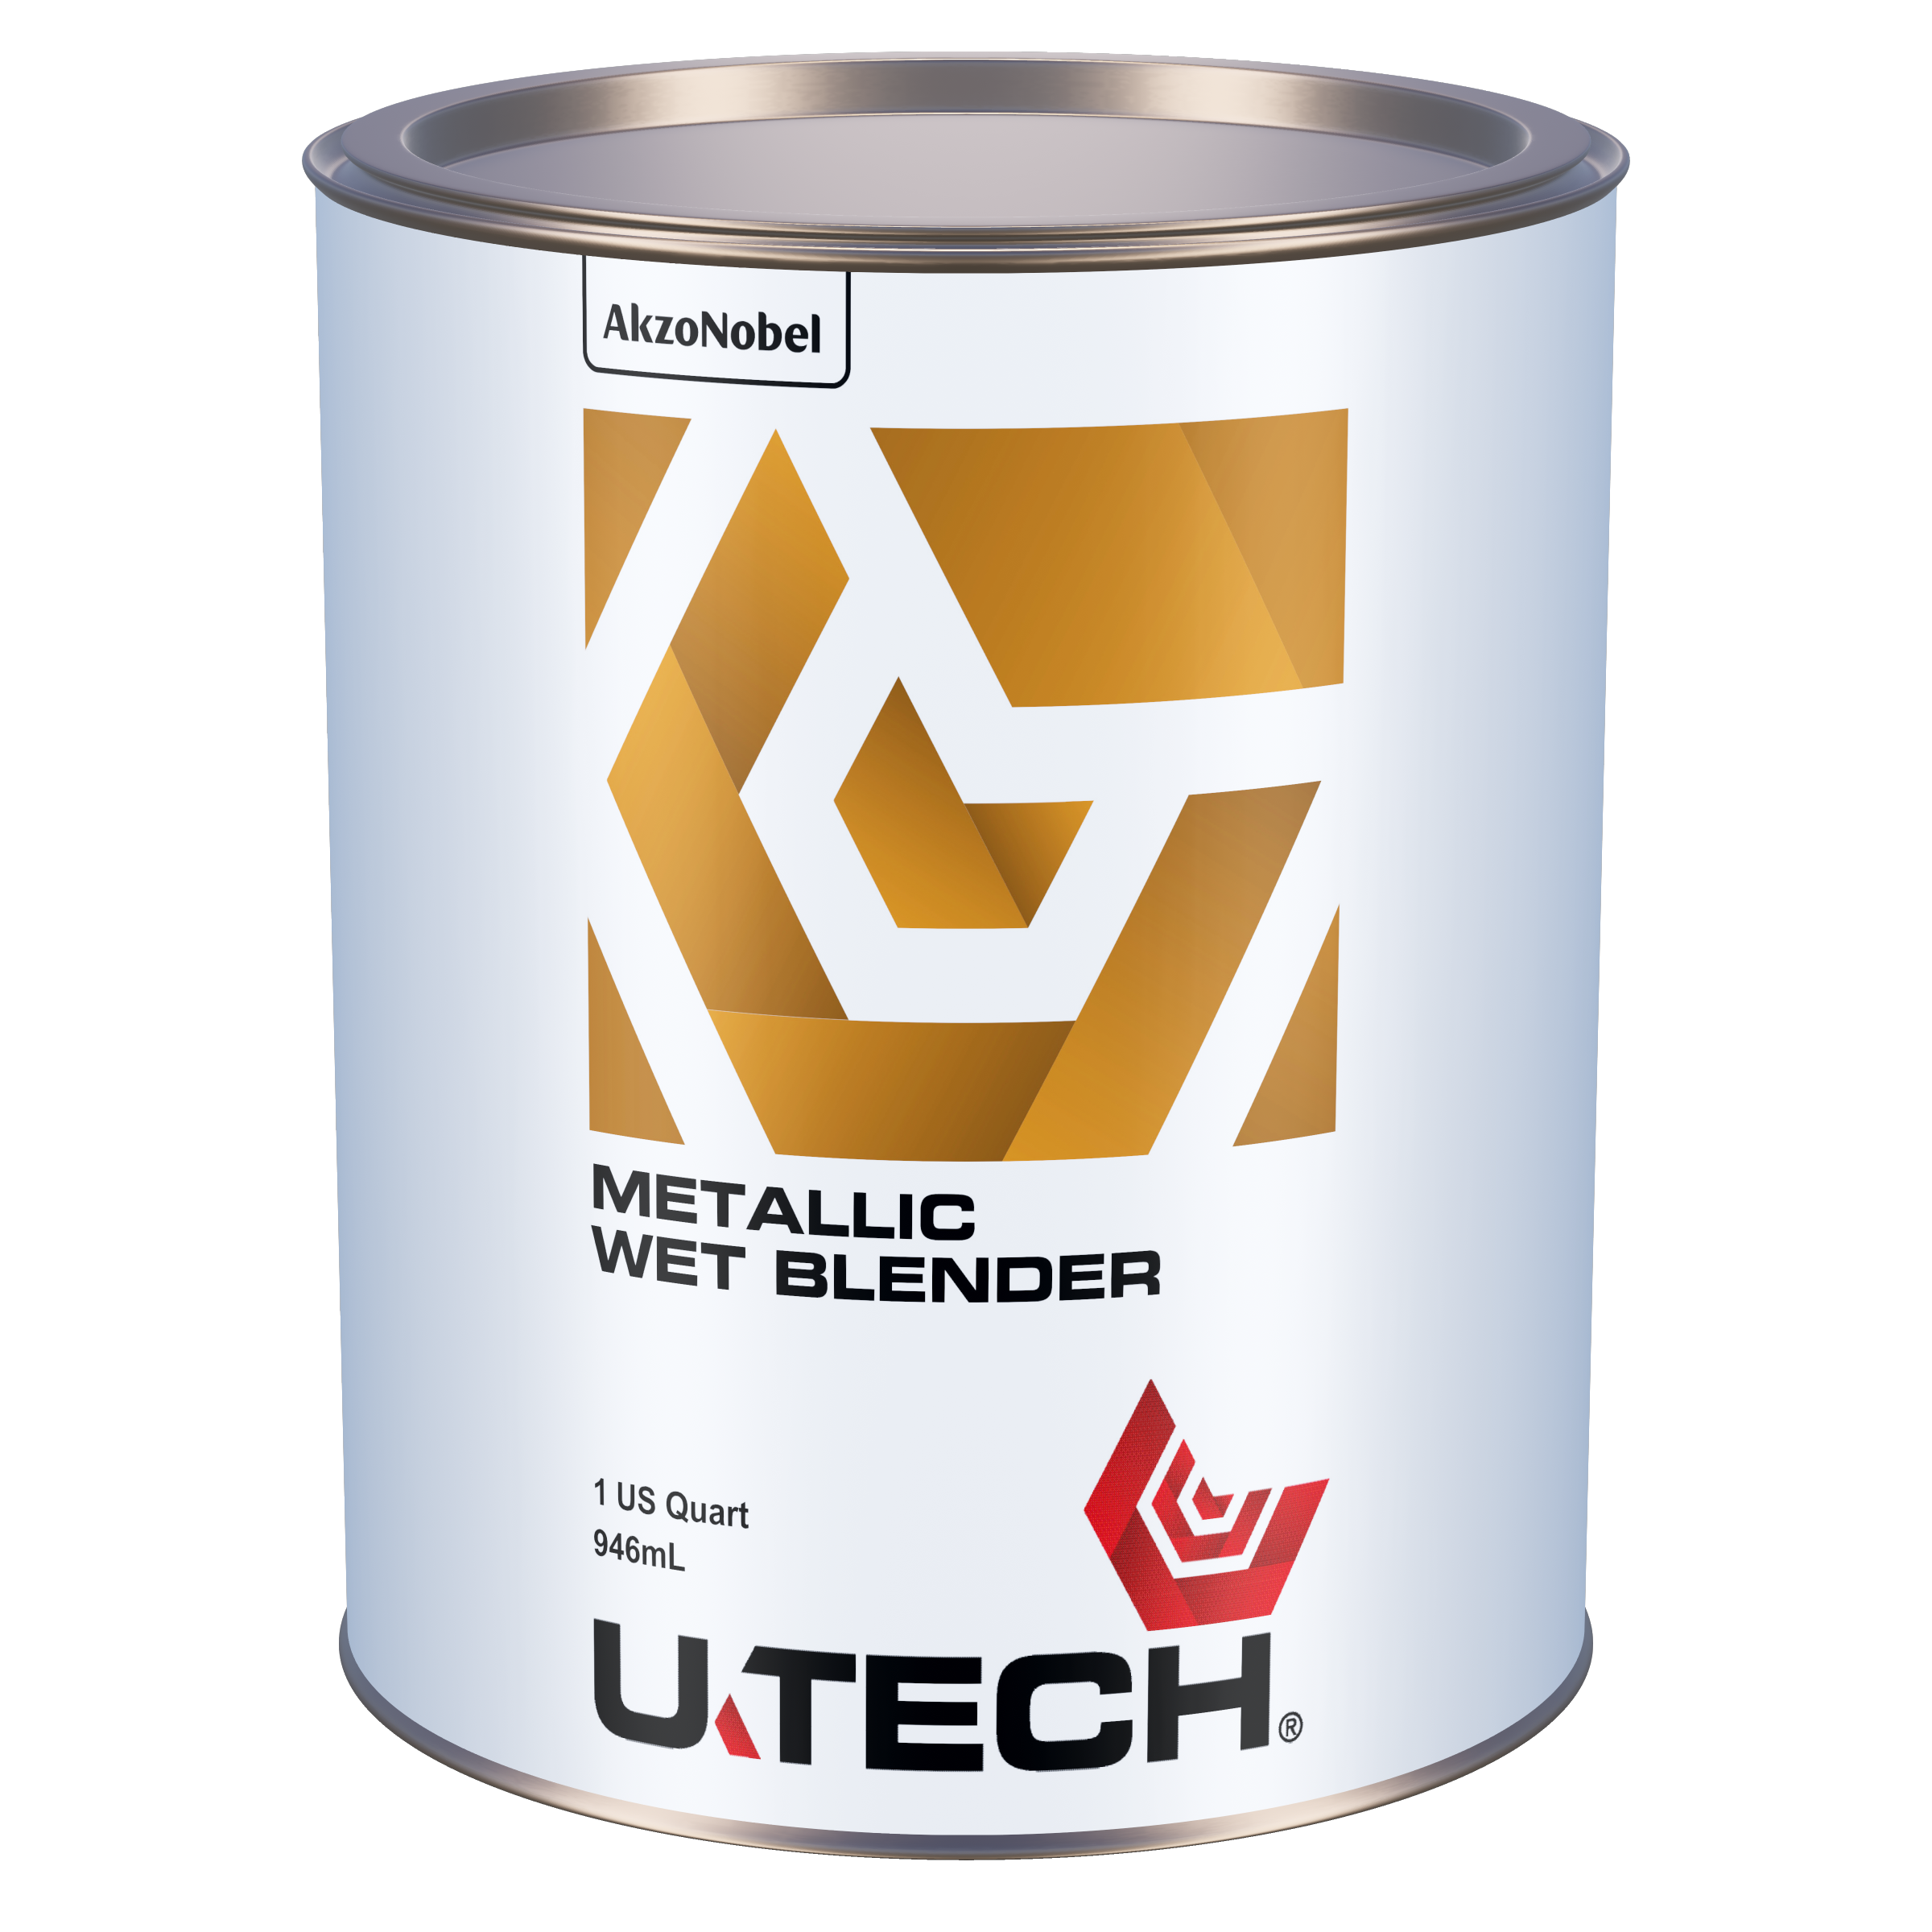 Metallic Wet Blender packshot